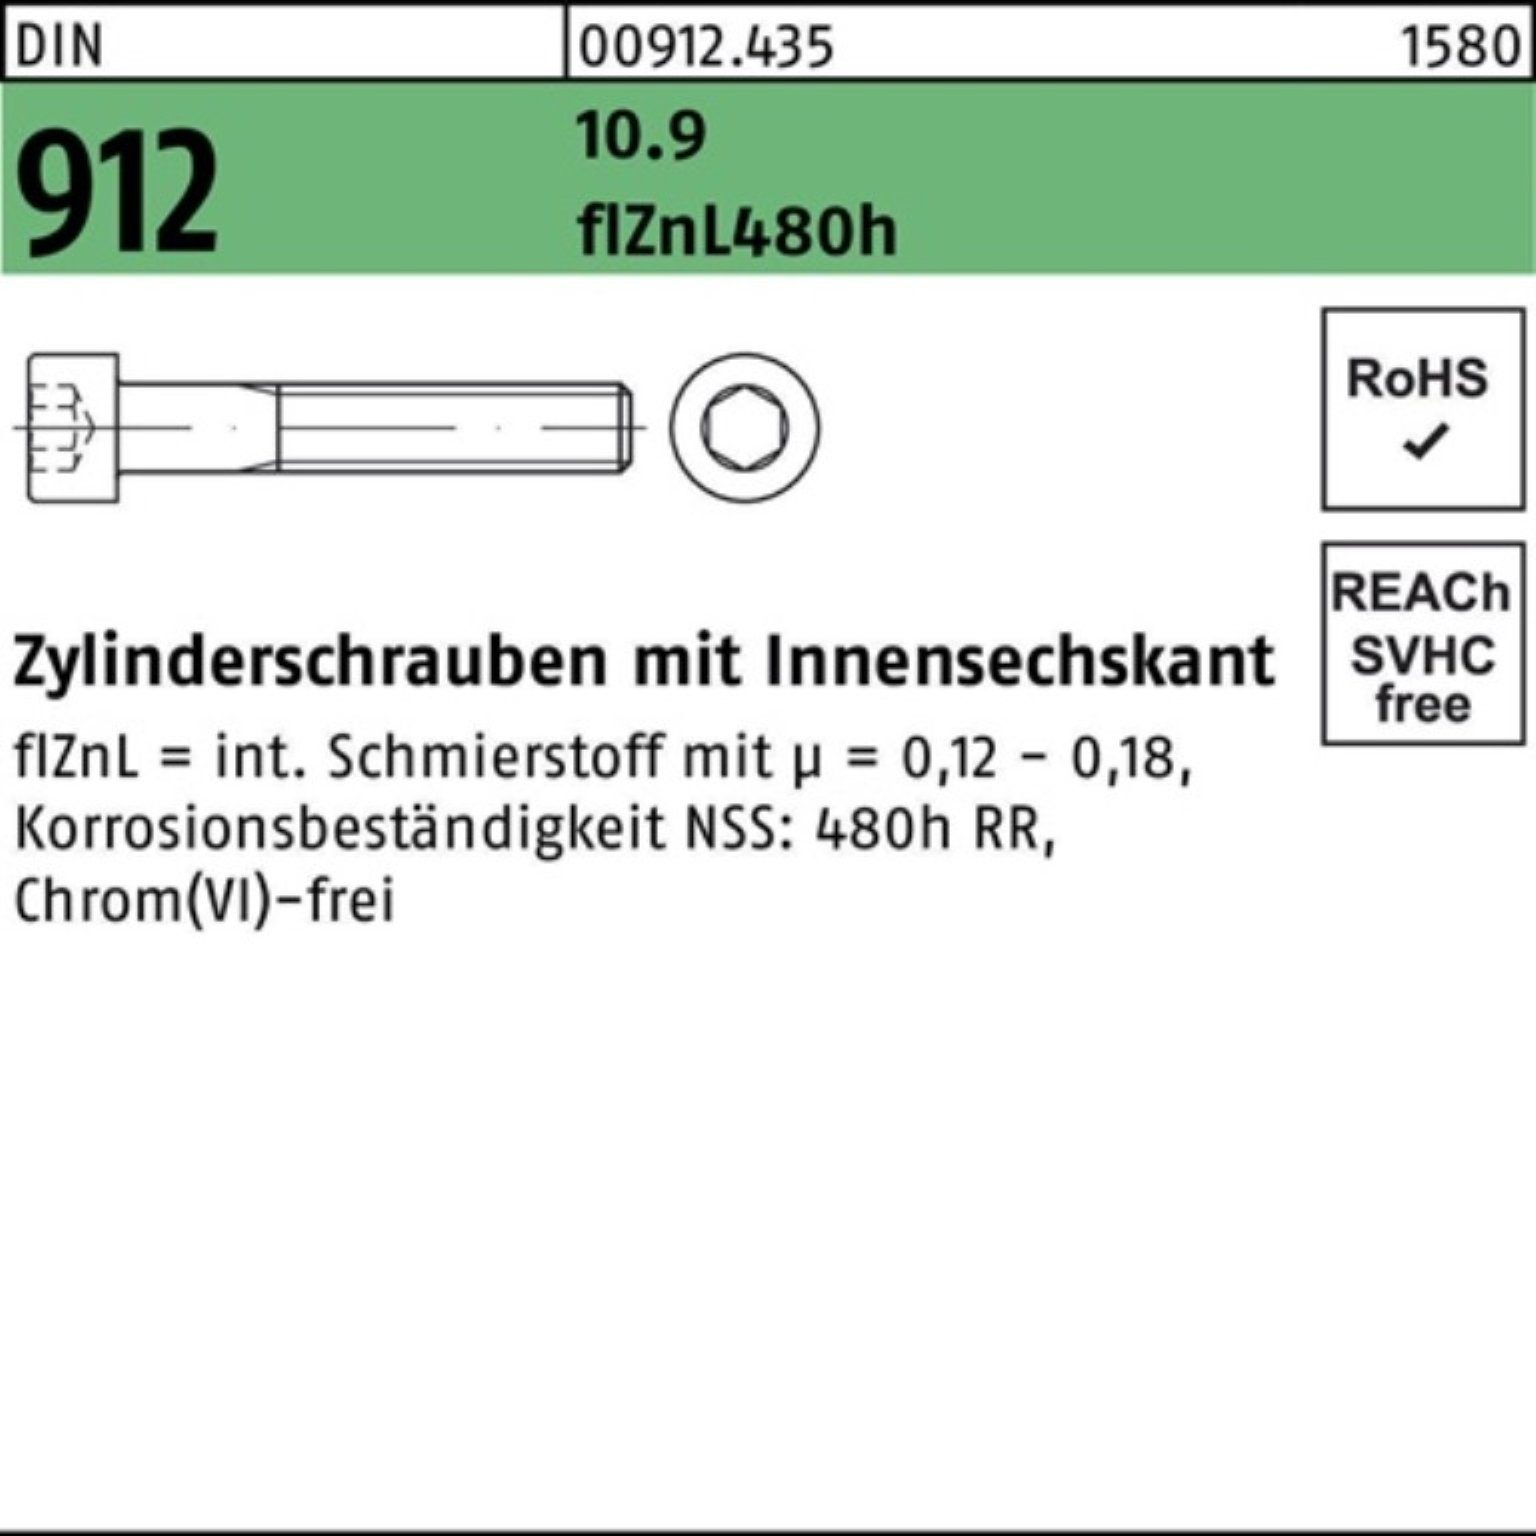 100er DIN Zylinderschraube 912 flZnL/nc/x/x 10.9 Zylinderschraube Reyher Pack Innen-6kt M14x70